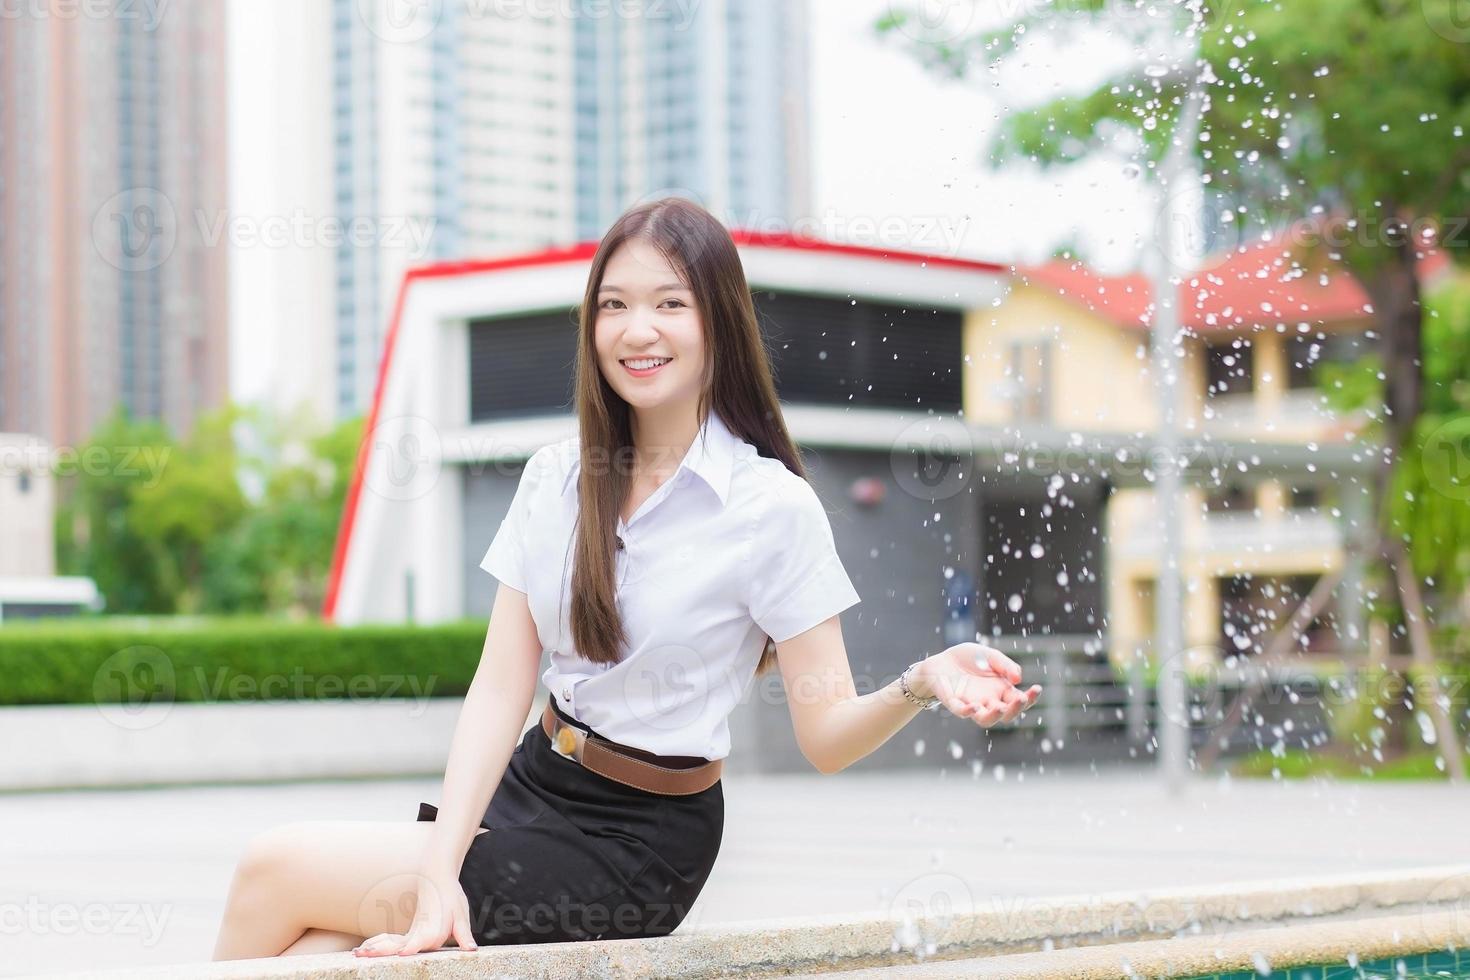 retrato de un estudiante tailandés adulto con uniforme de estudiante universitario. hermosa chica asiática sentada sacudiendo el agua y sonriendo felizmente en la universidad al aire libre. foto